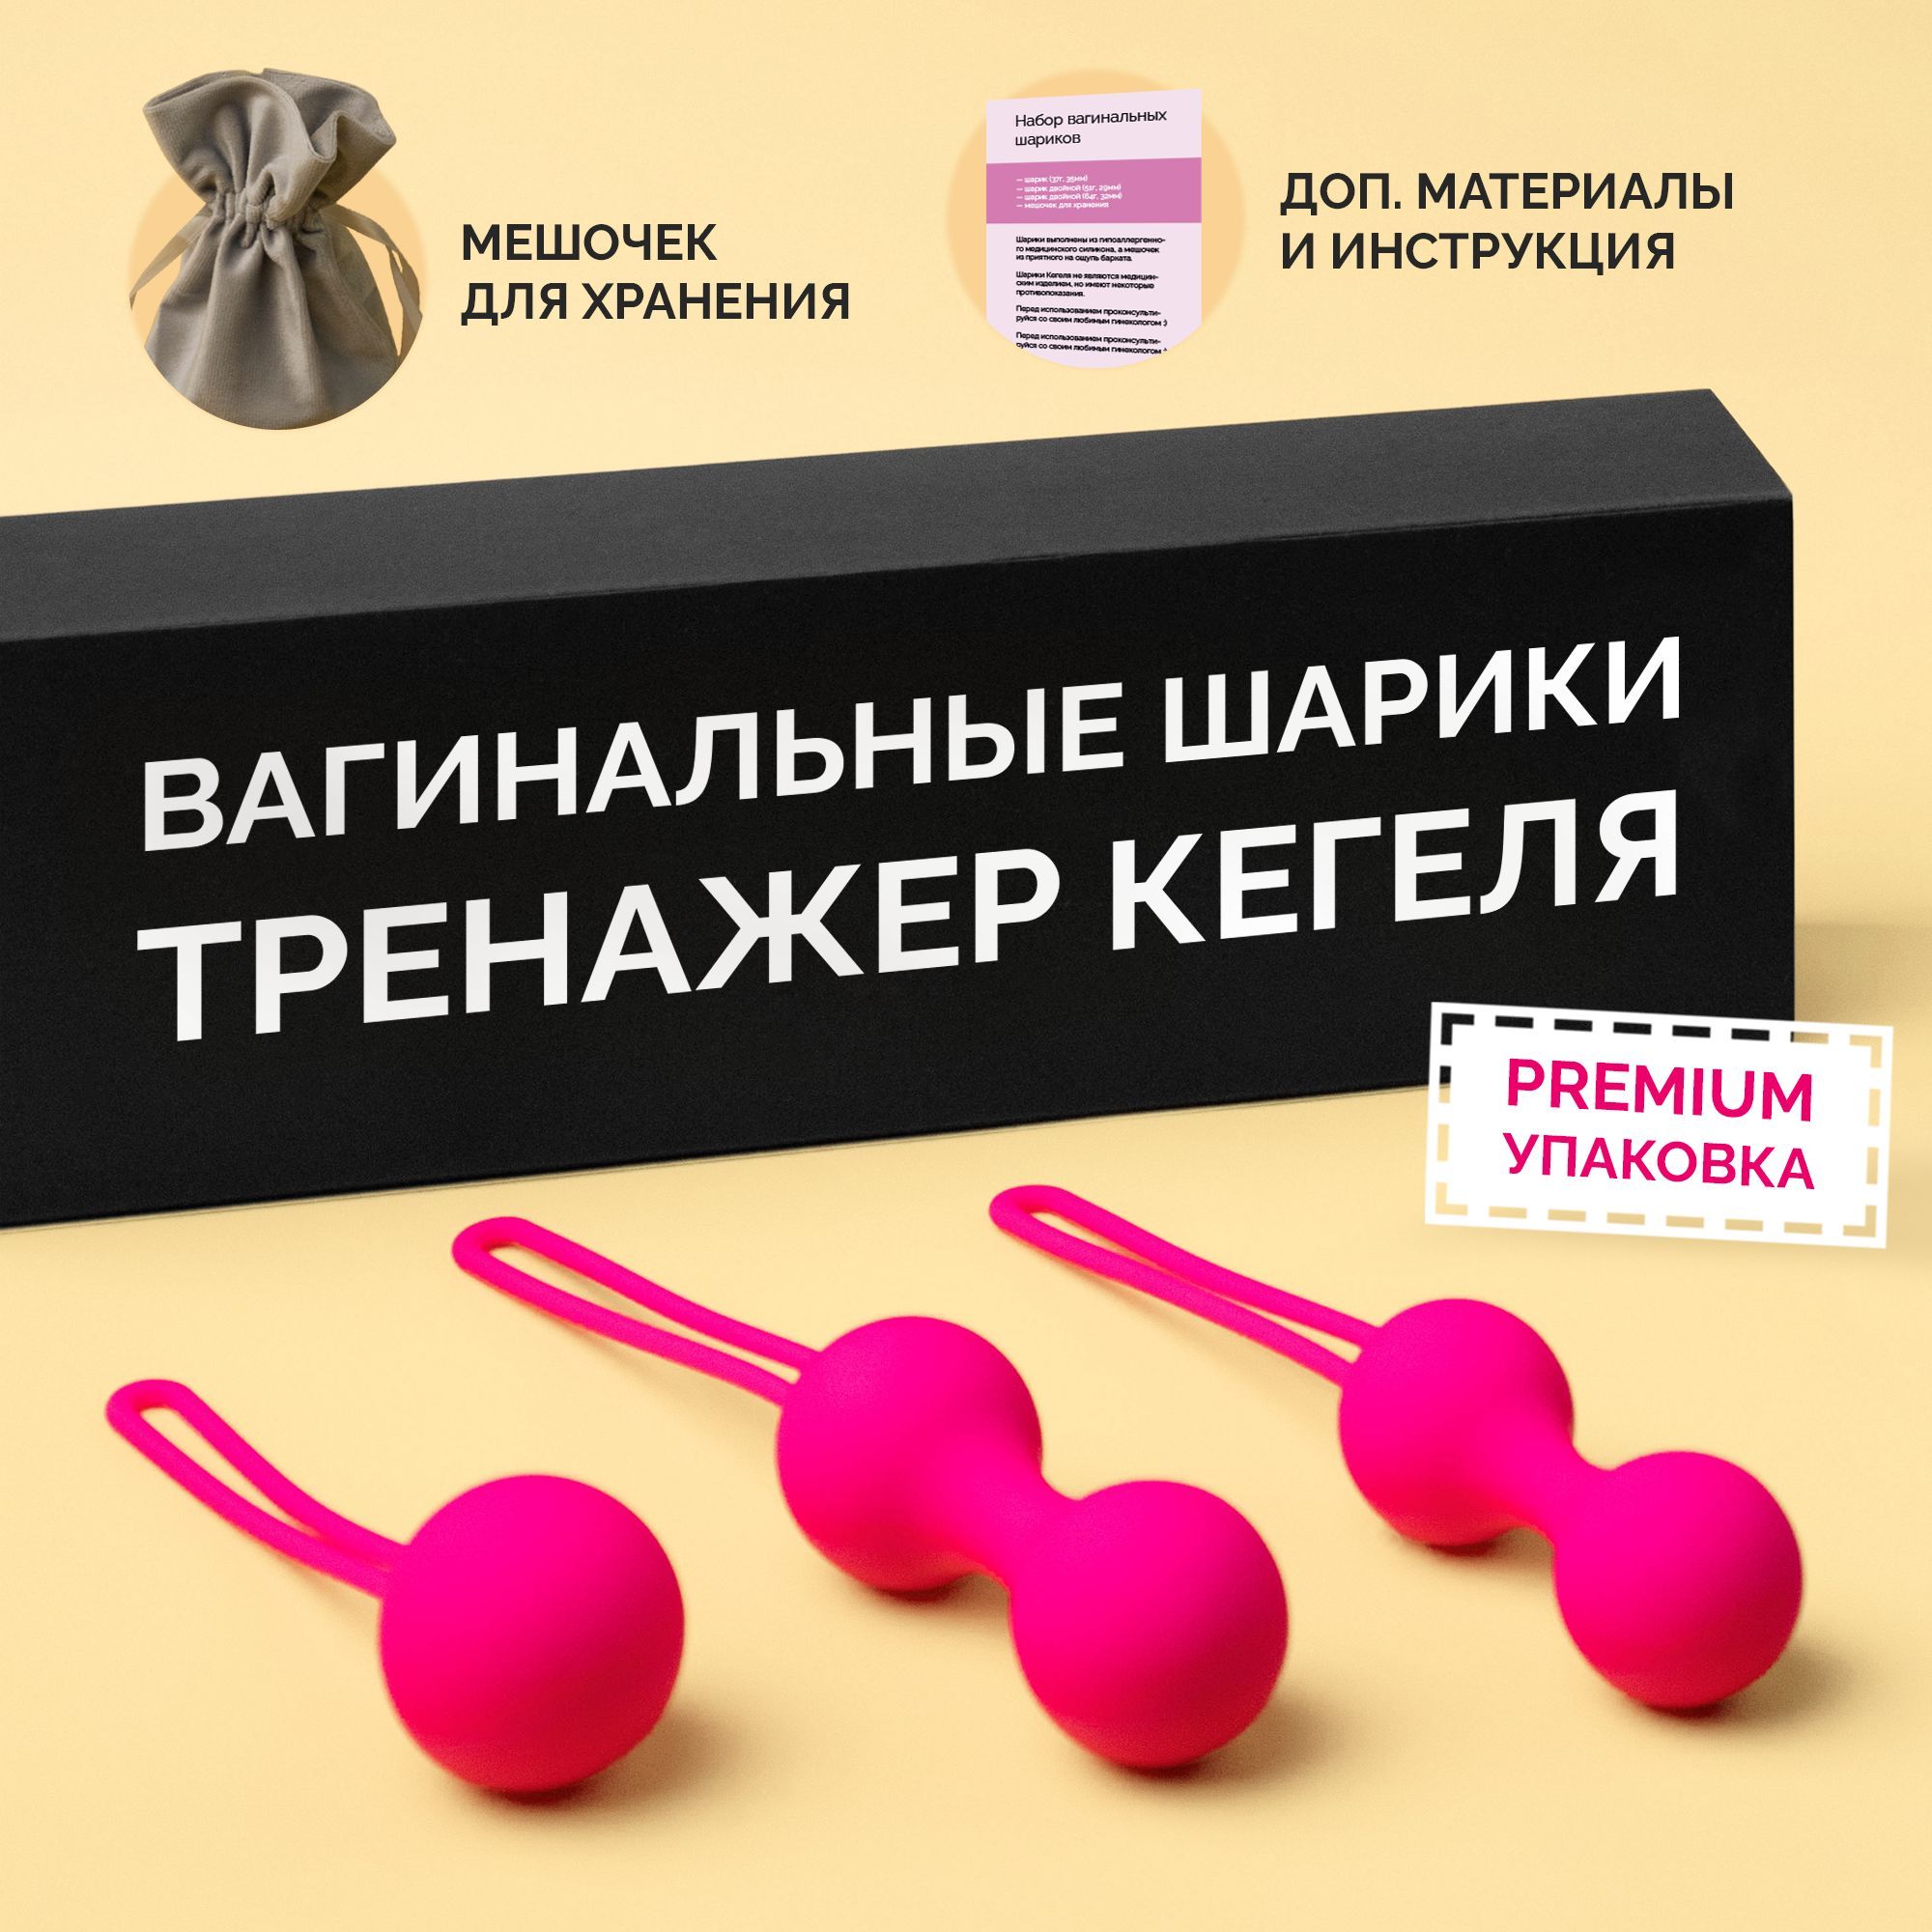 Вагинальные шарики - купить, отзывы, цена на nordwestspb.ru